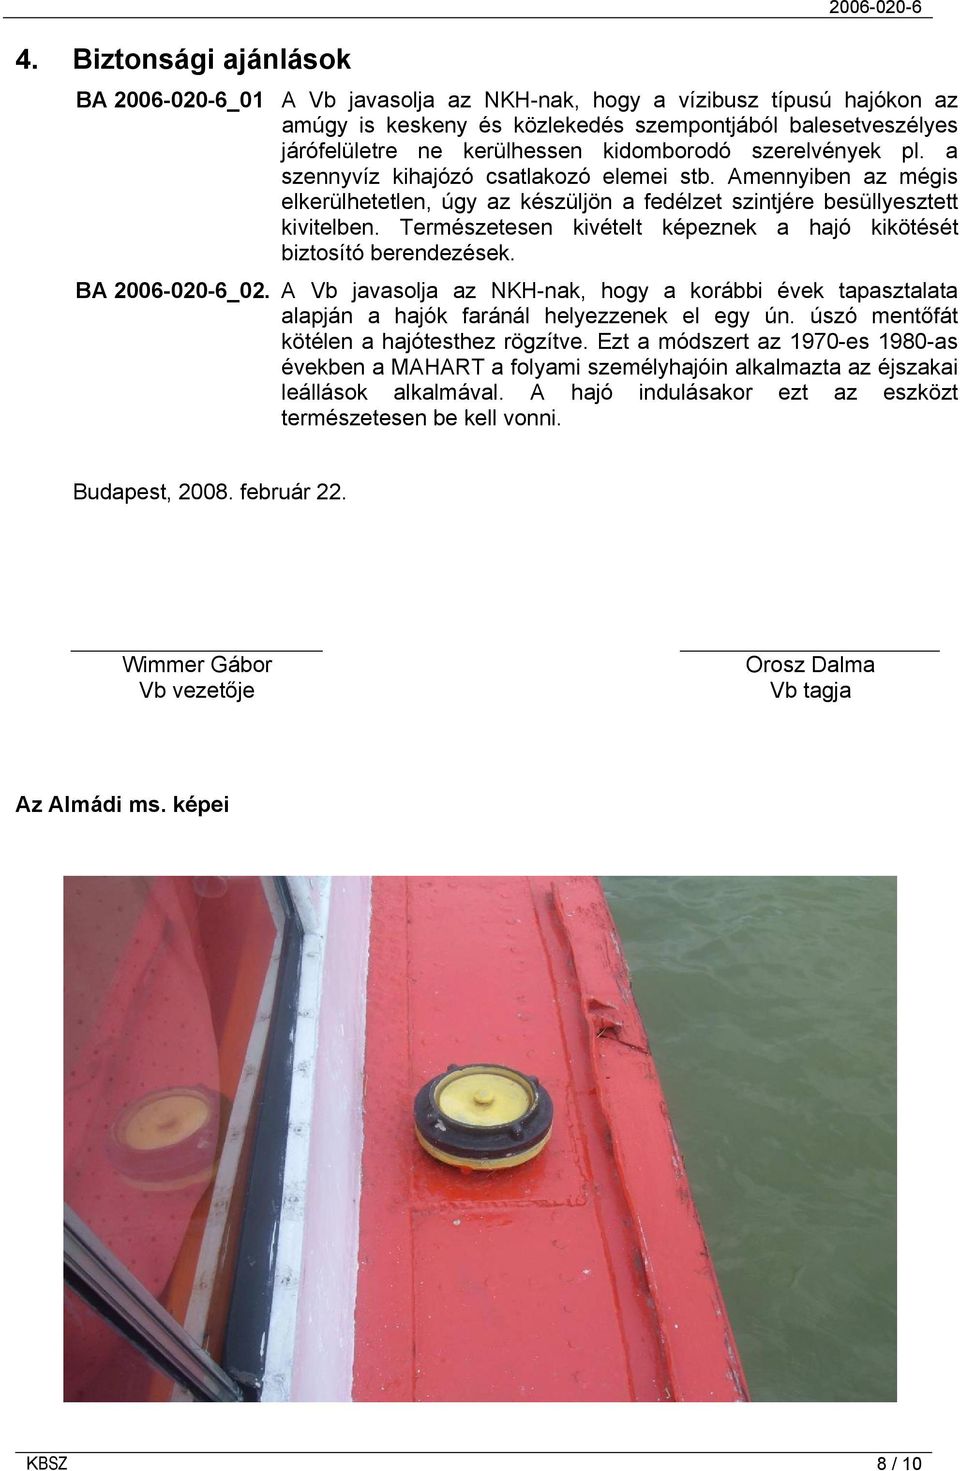 Természetesen kivételt képeznek a hajó kikötését biztosító berendezések. BA 2006-020-6_02. A Vb javasolja az NKH-nak, hogy a korábbi évek tapasztalata alapján a hajók faránál helyezzenek el egy ún.